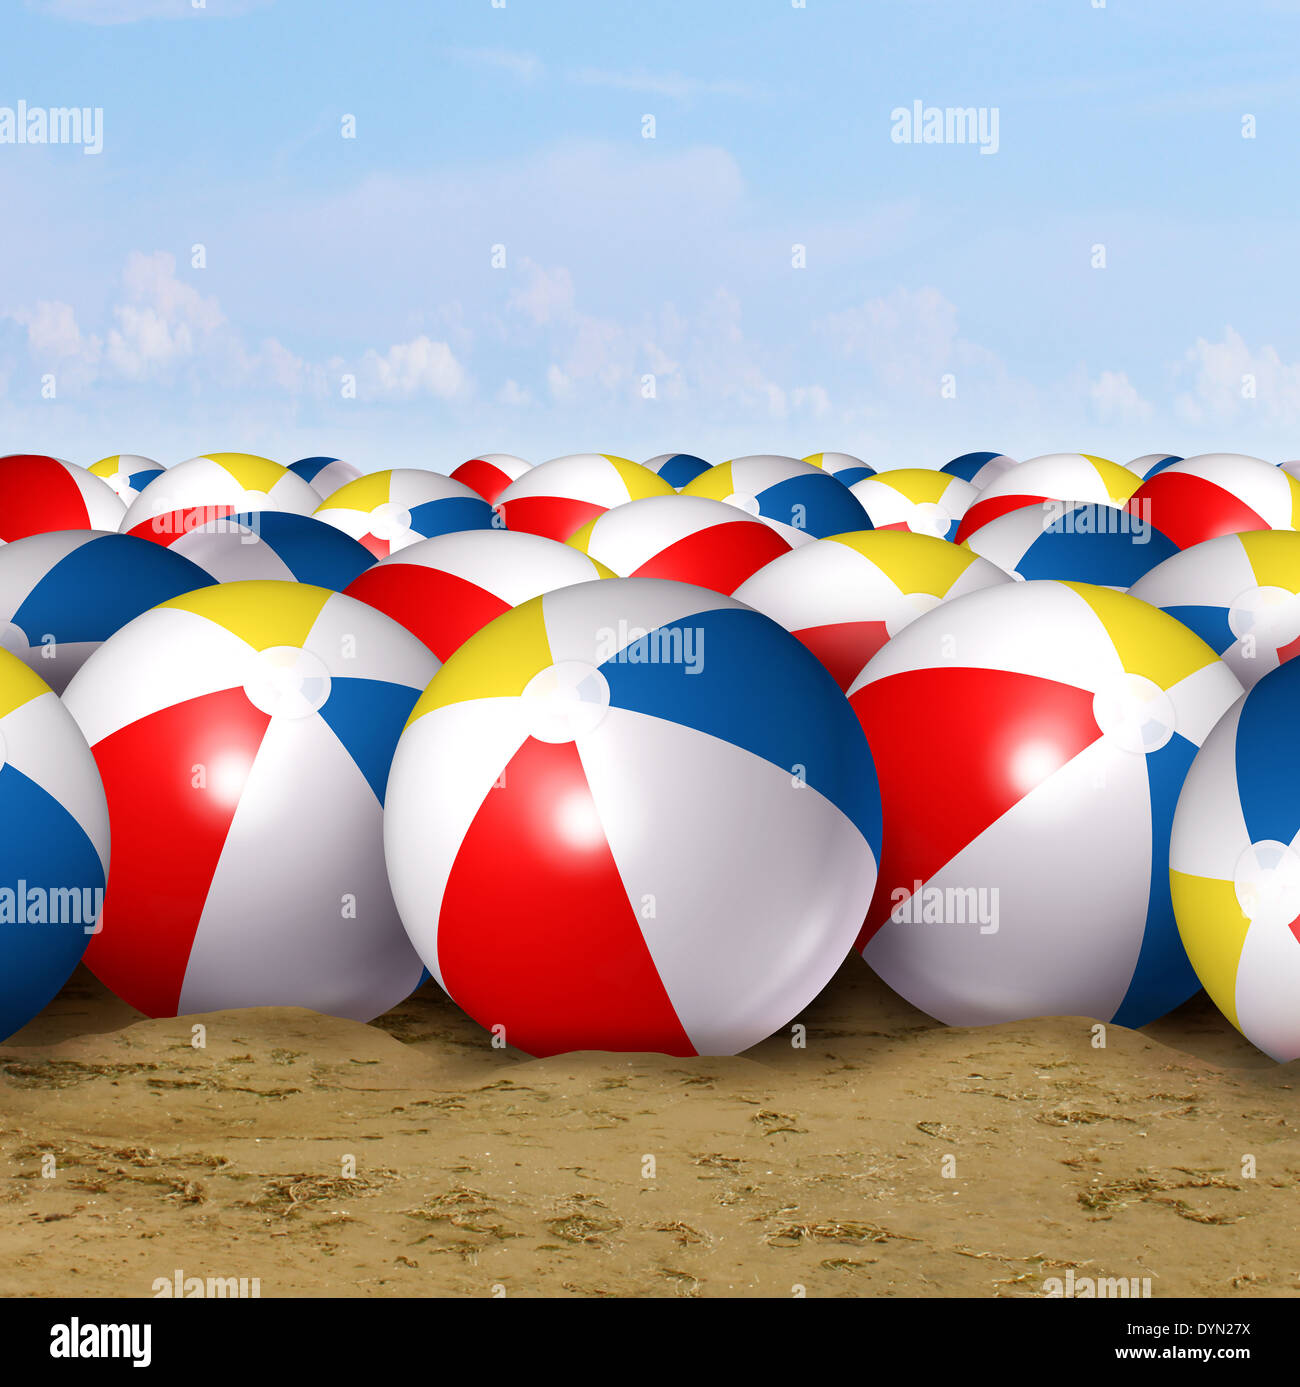 Spiaggia di sfondo a sfera come un simbolo classico del divertimento estivo all'oceano con un gruppo di gonfiato delle sfere di plastica di colore rosso blu bianco Foto Stock